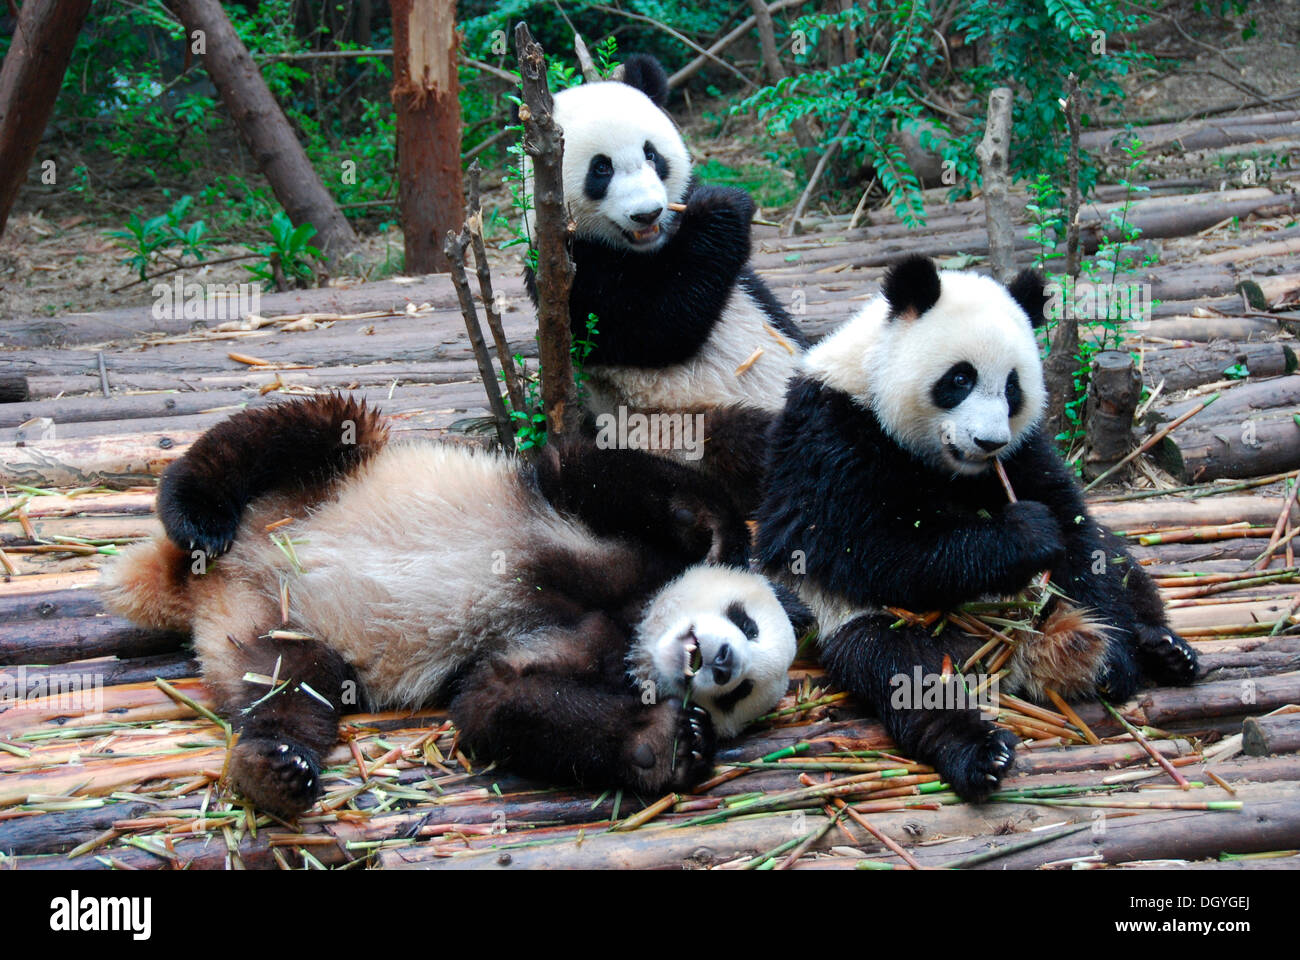 Panda Giganti (Ailuropoda melanoleuca) a colazione, panda gigante allevamento Base di ricerca, Chengdu, Cina e Asia Foto Stock